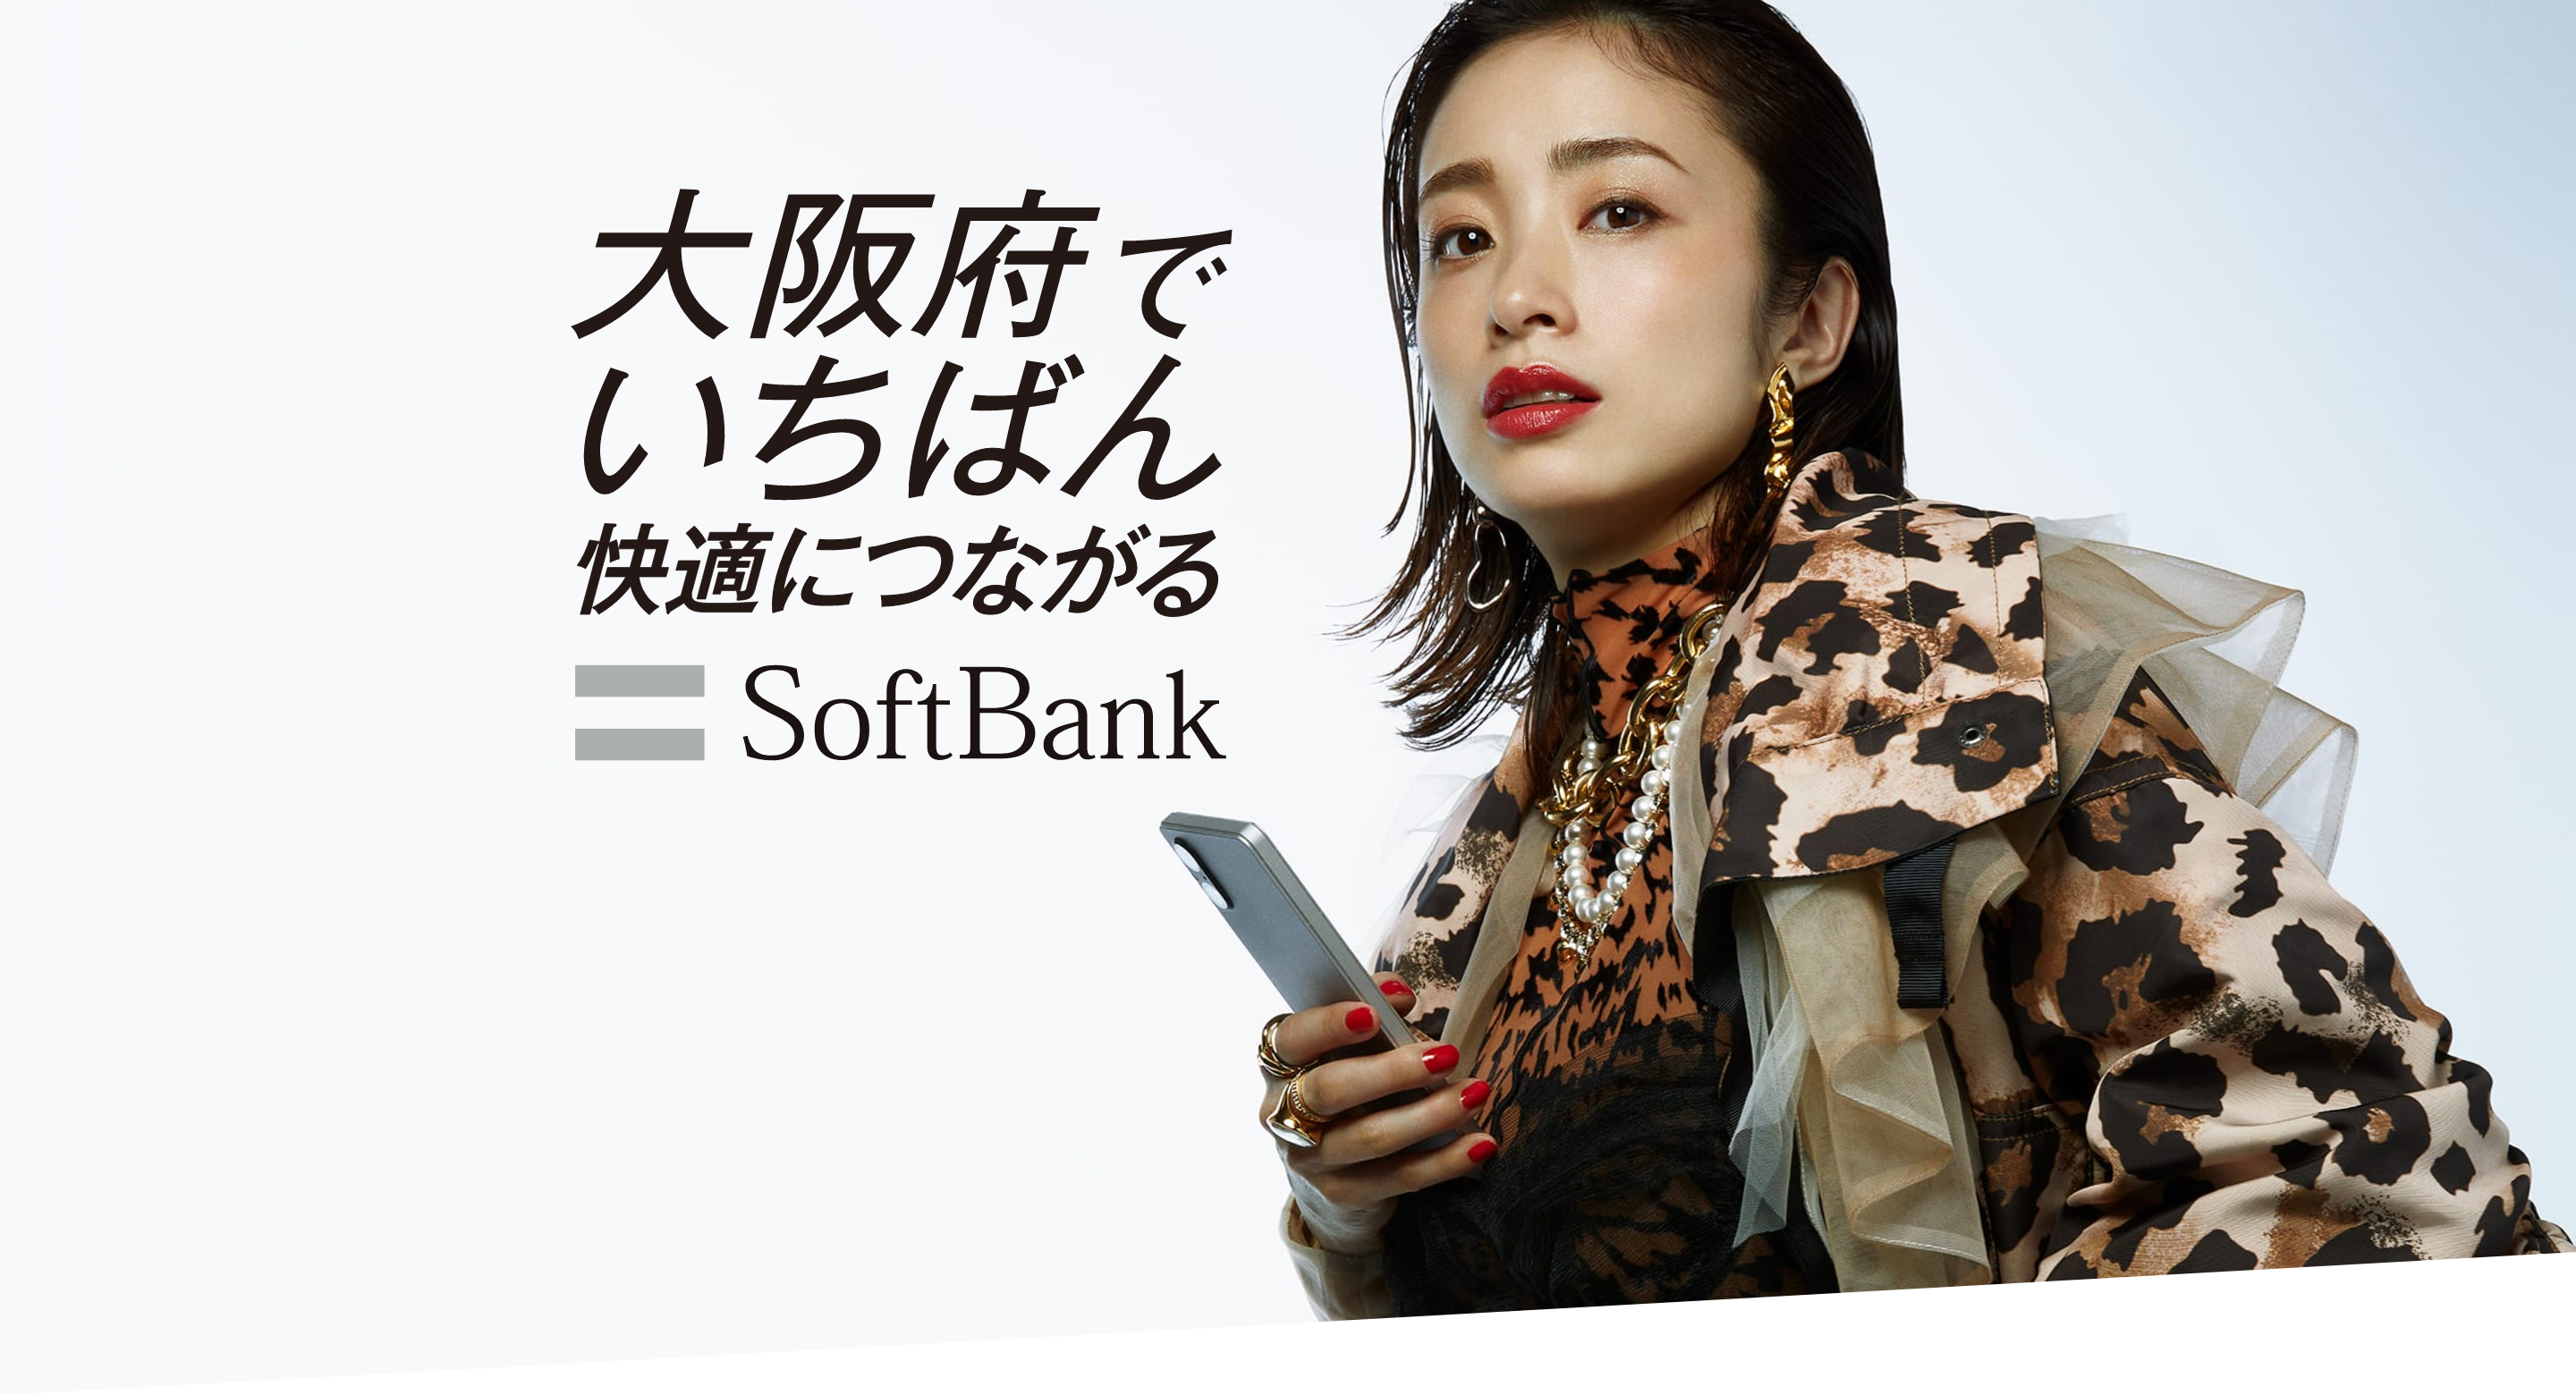 大阪府でいちばん快適につながるSoftbank